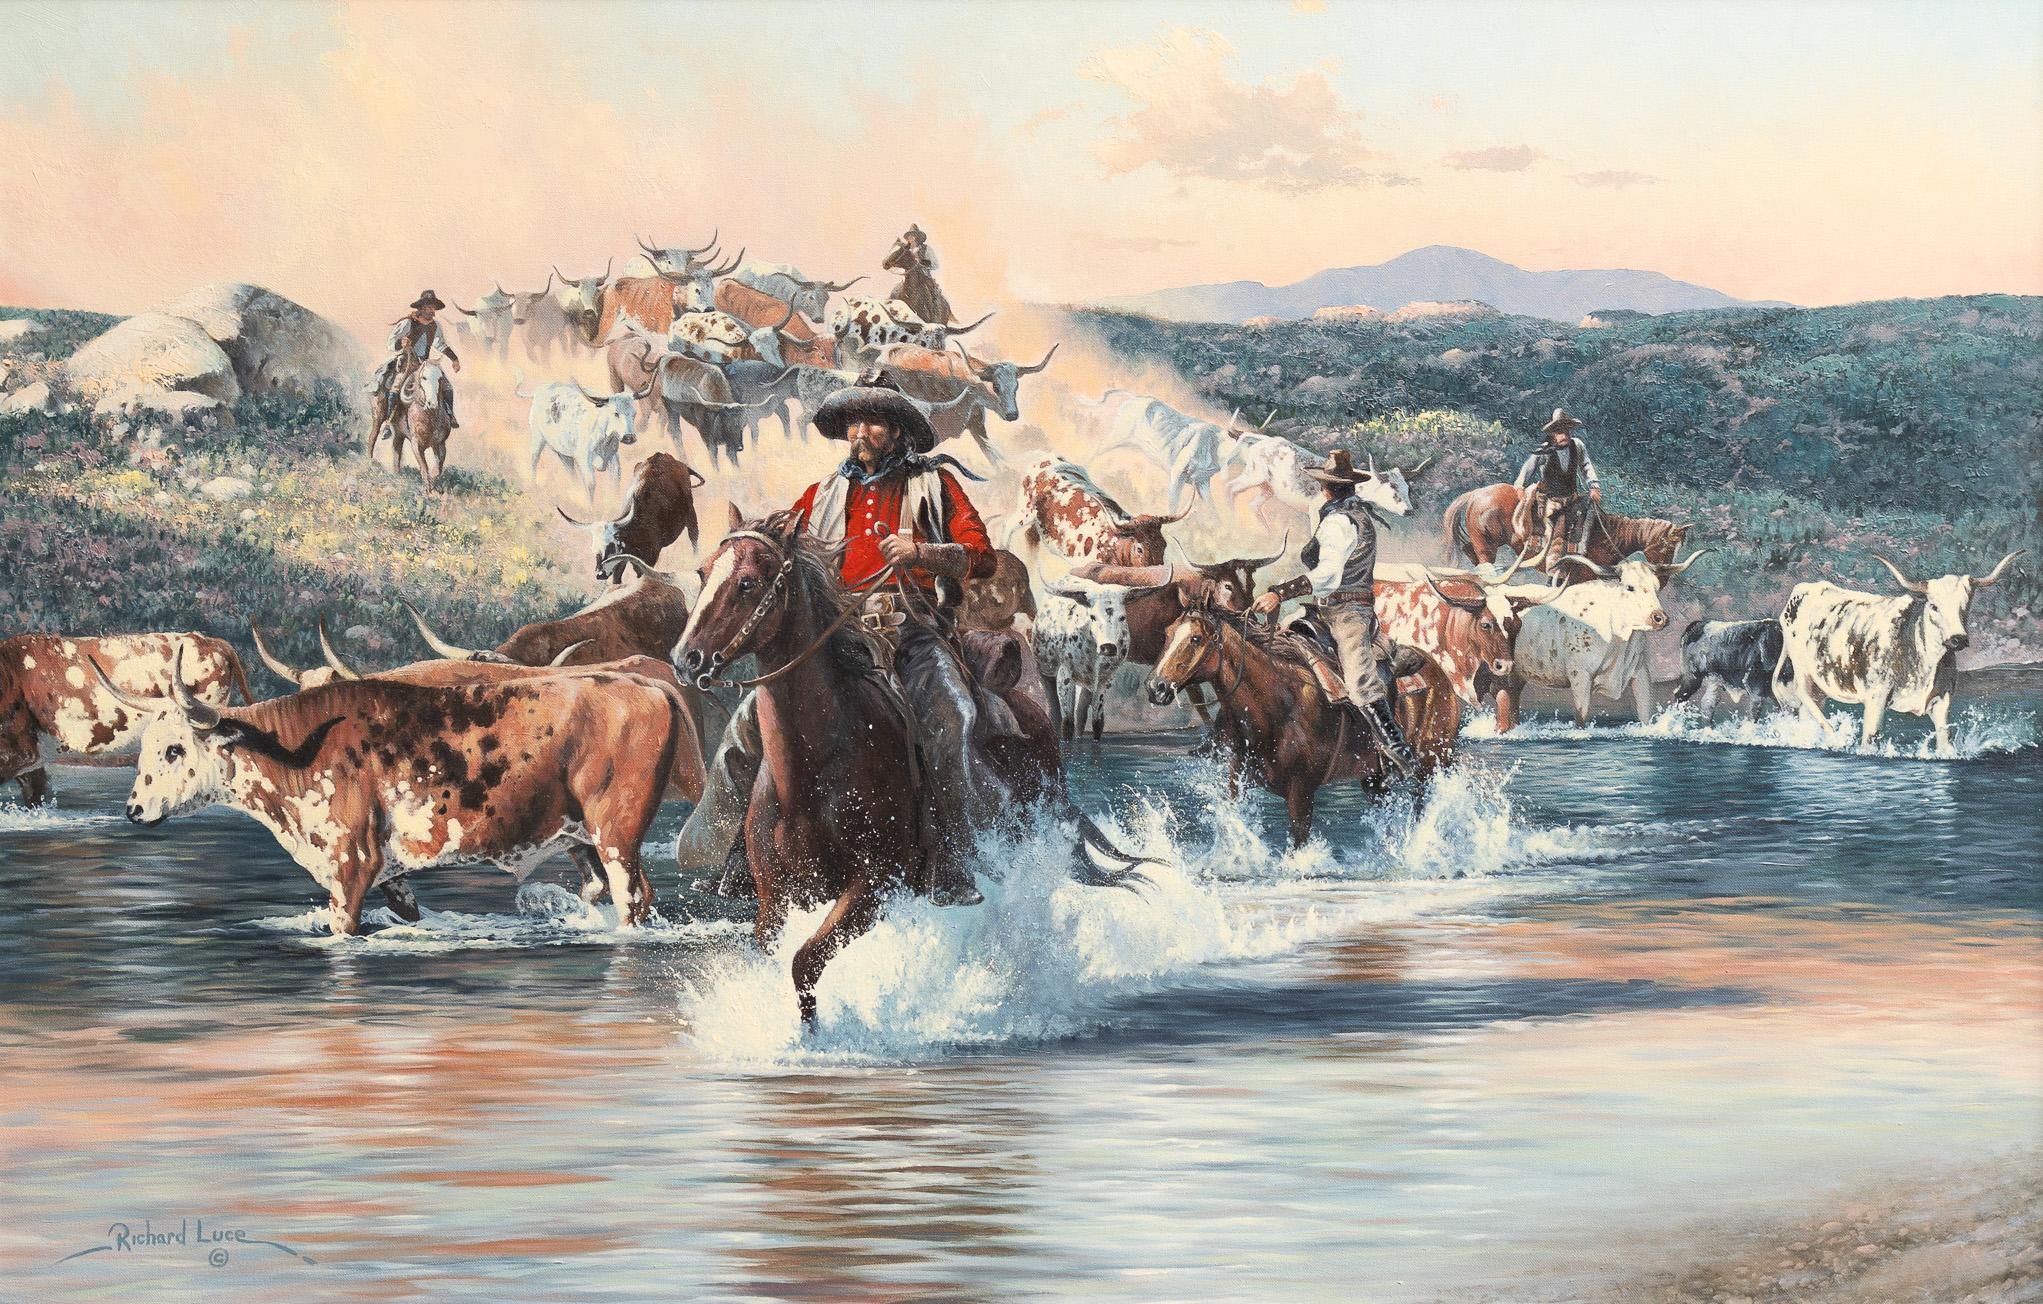 Figurative Painting Richard Luce - Scène de conduite du bétail par les cow-boys "Crossing the Creek" (traverser le ruisseau)